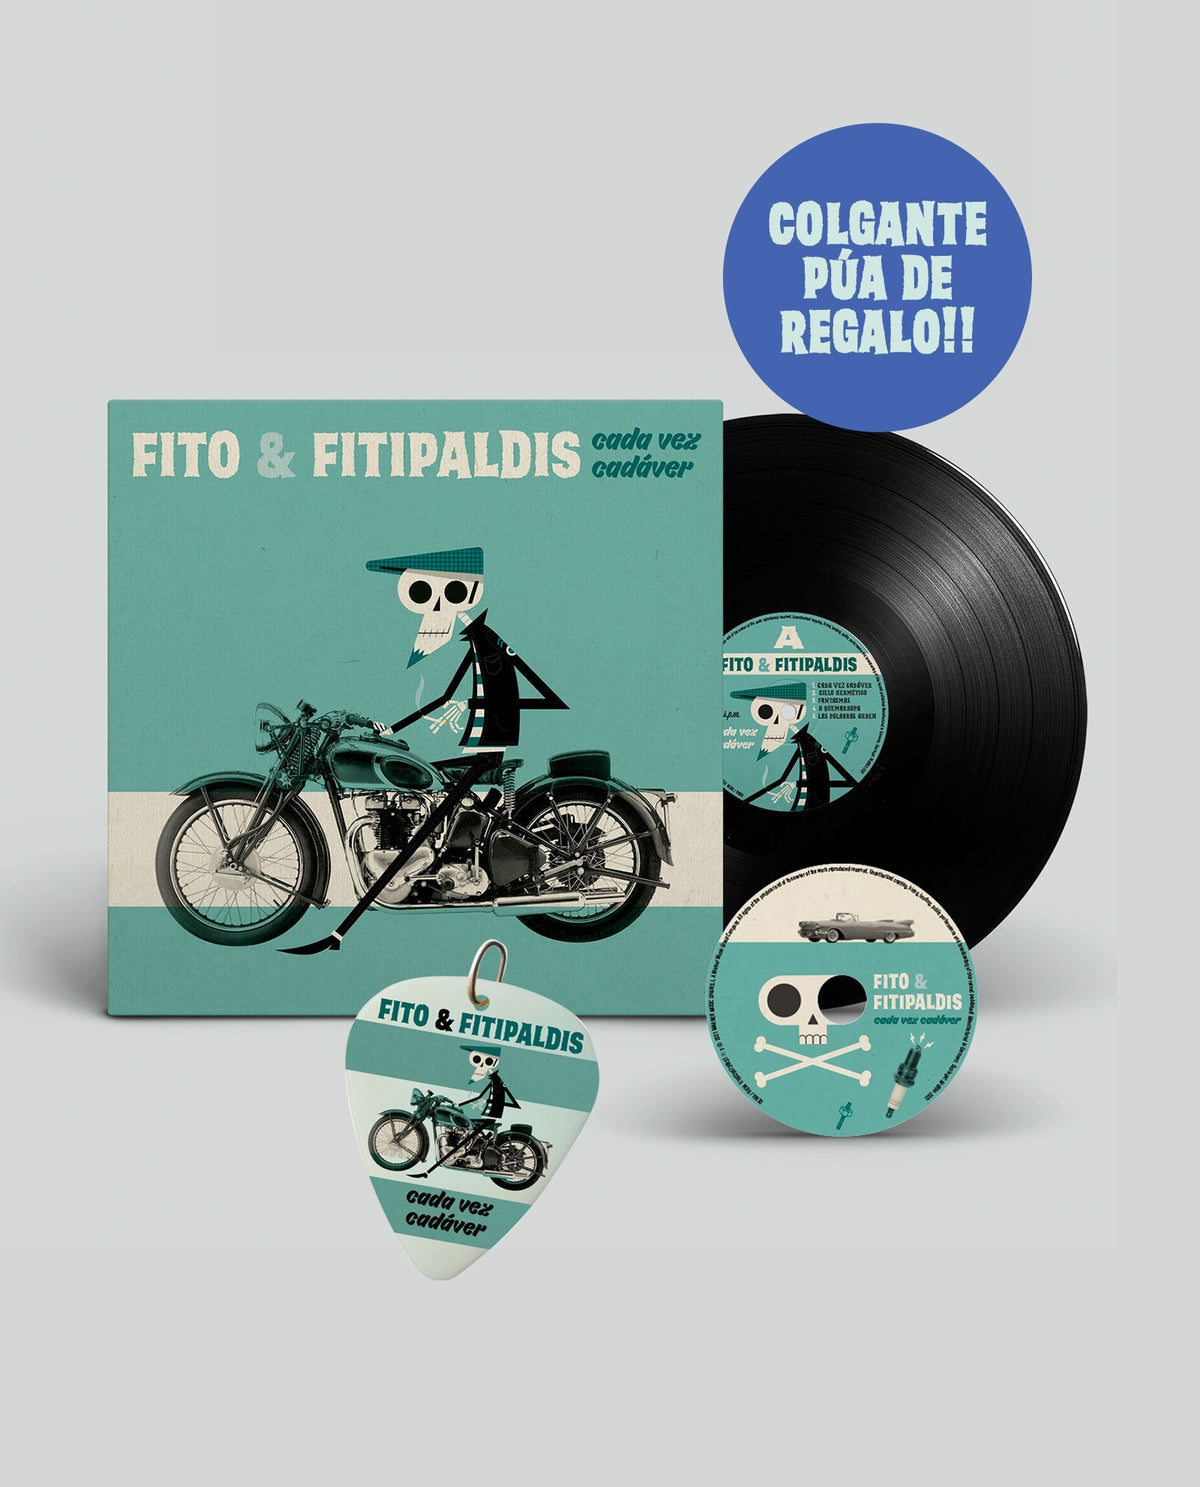 VINILO + CD "CADA VEZ CADÁVER" + Púa Colgante de REGALO - Rocktud - Fito y Fitipaldis